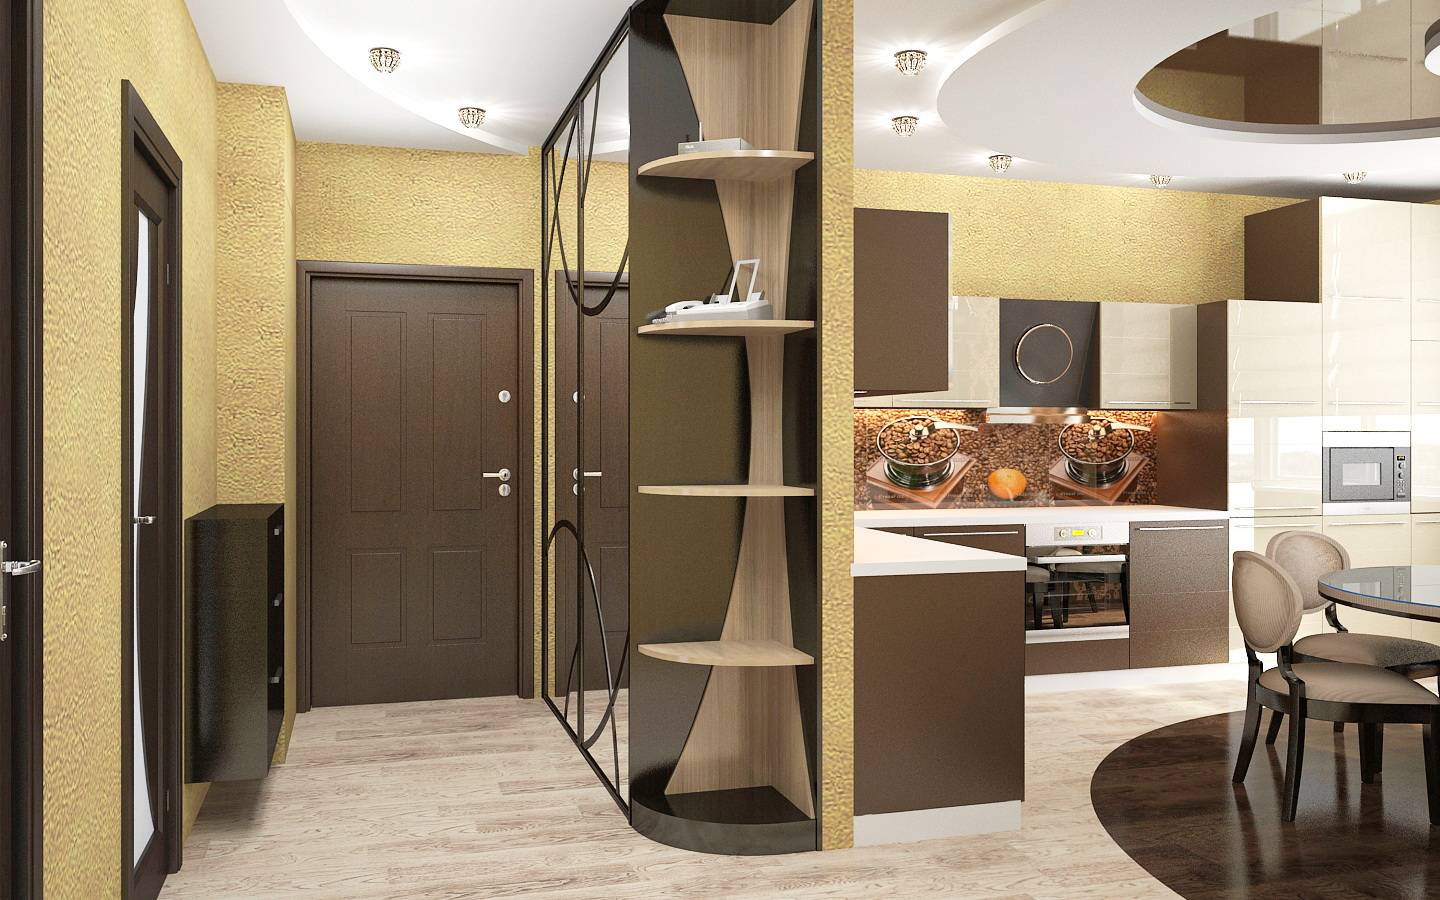 Дизайн коридора в однокомнатной квартире — фото, варианты планировки